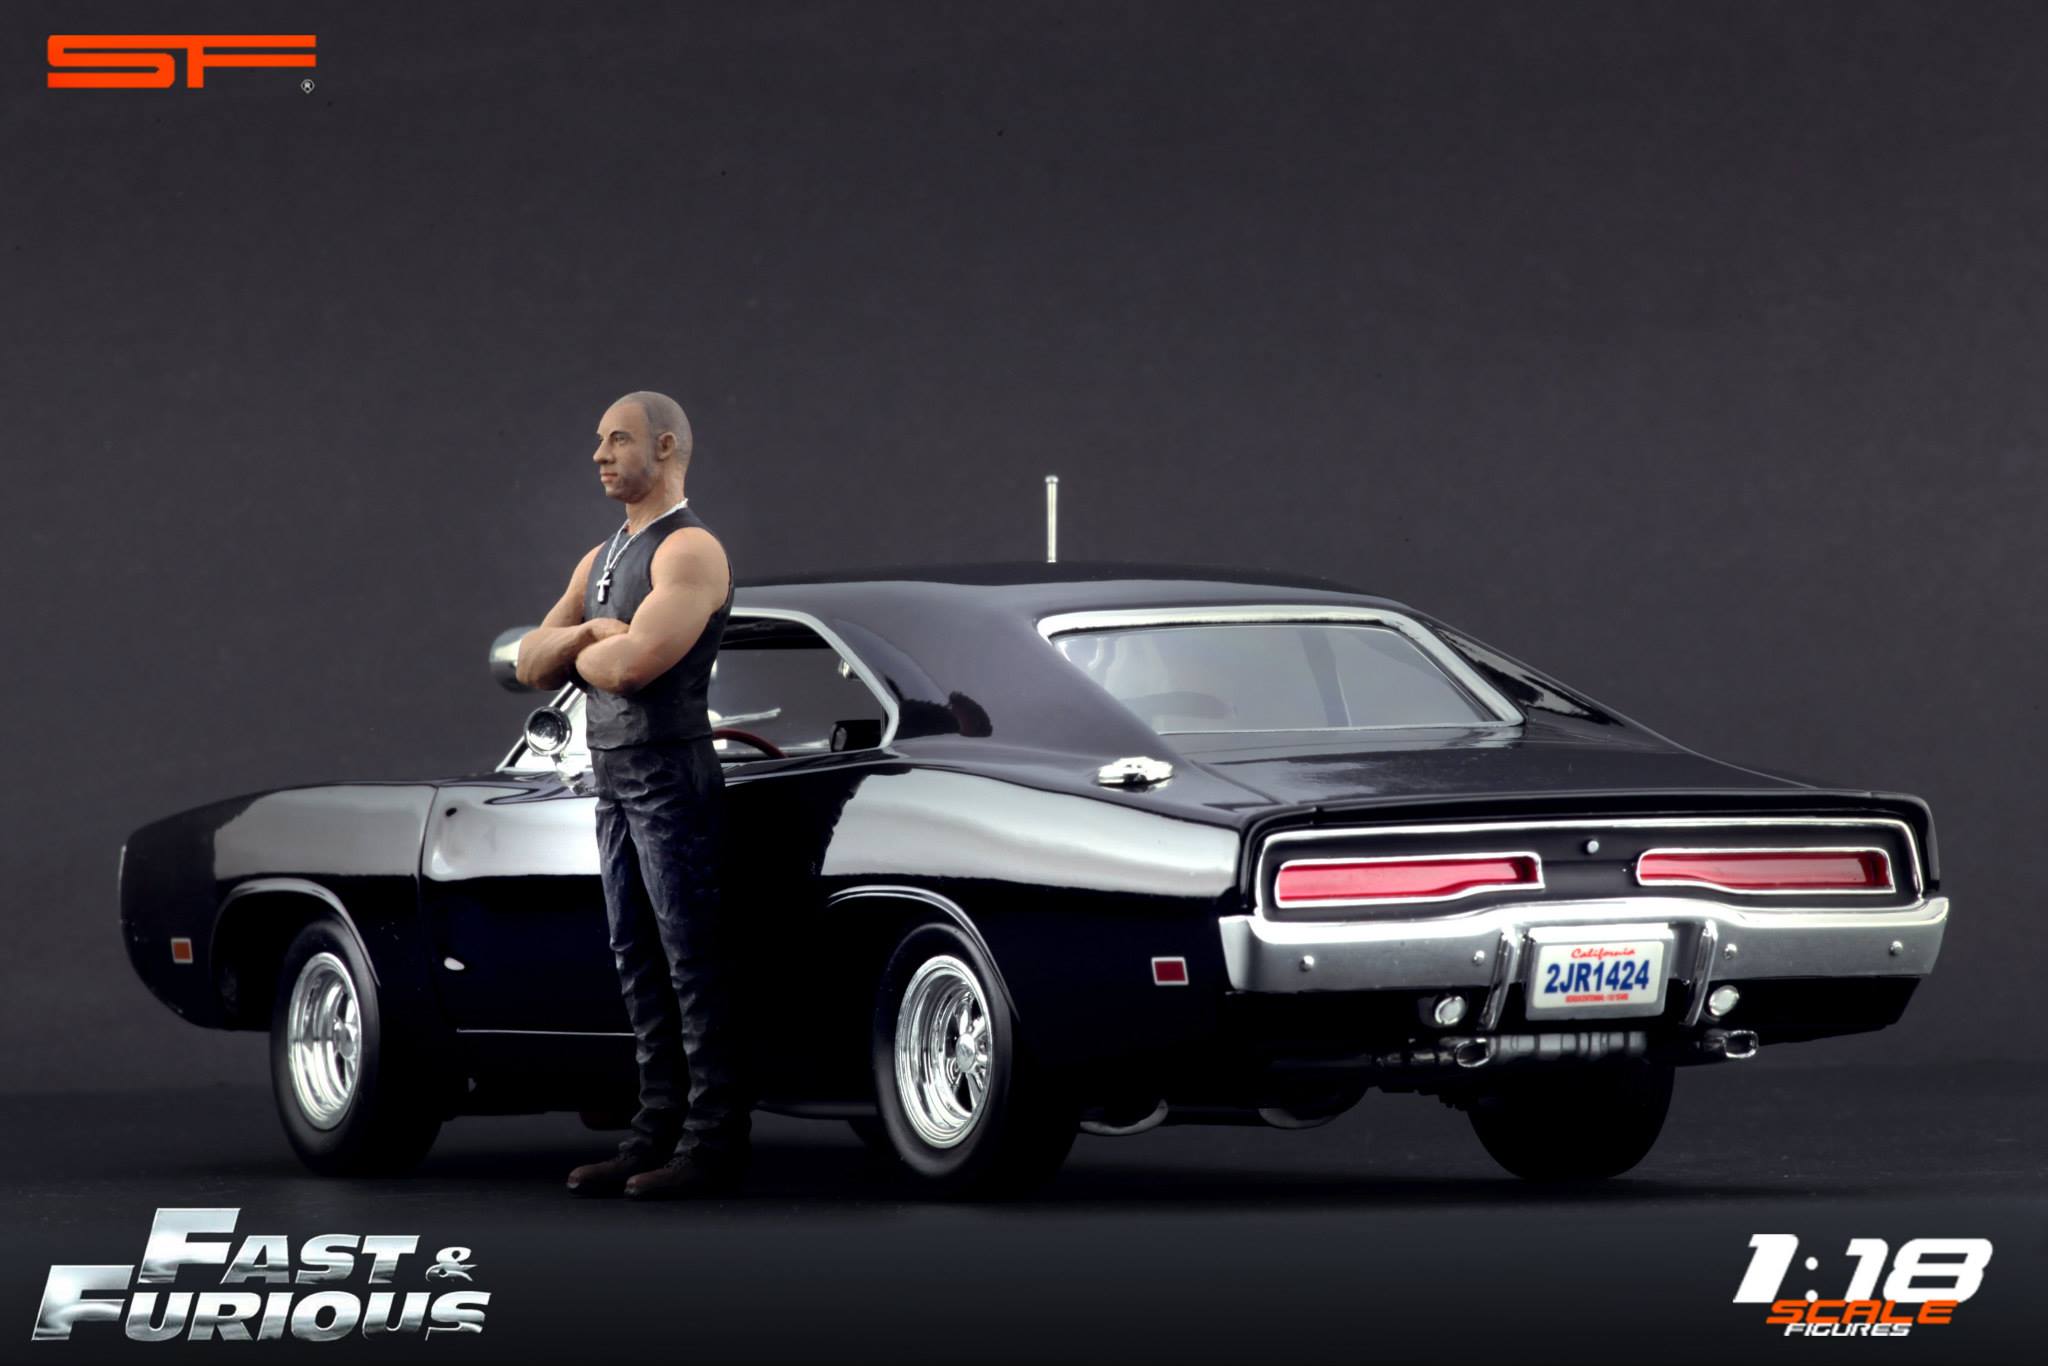 1:18 Fast & Furious Paul Walker Vin Diesel VERY RARE!! figures NO CARS !!!